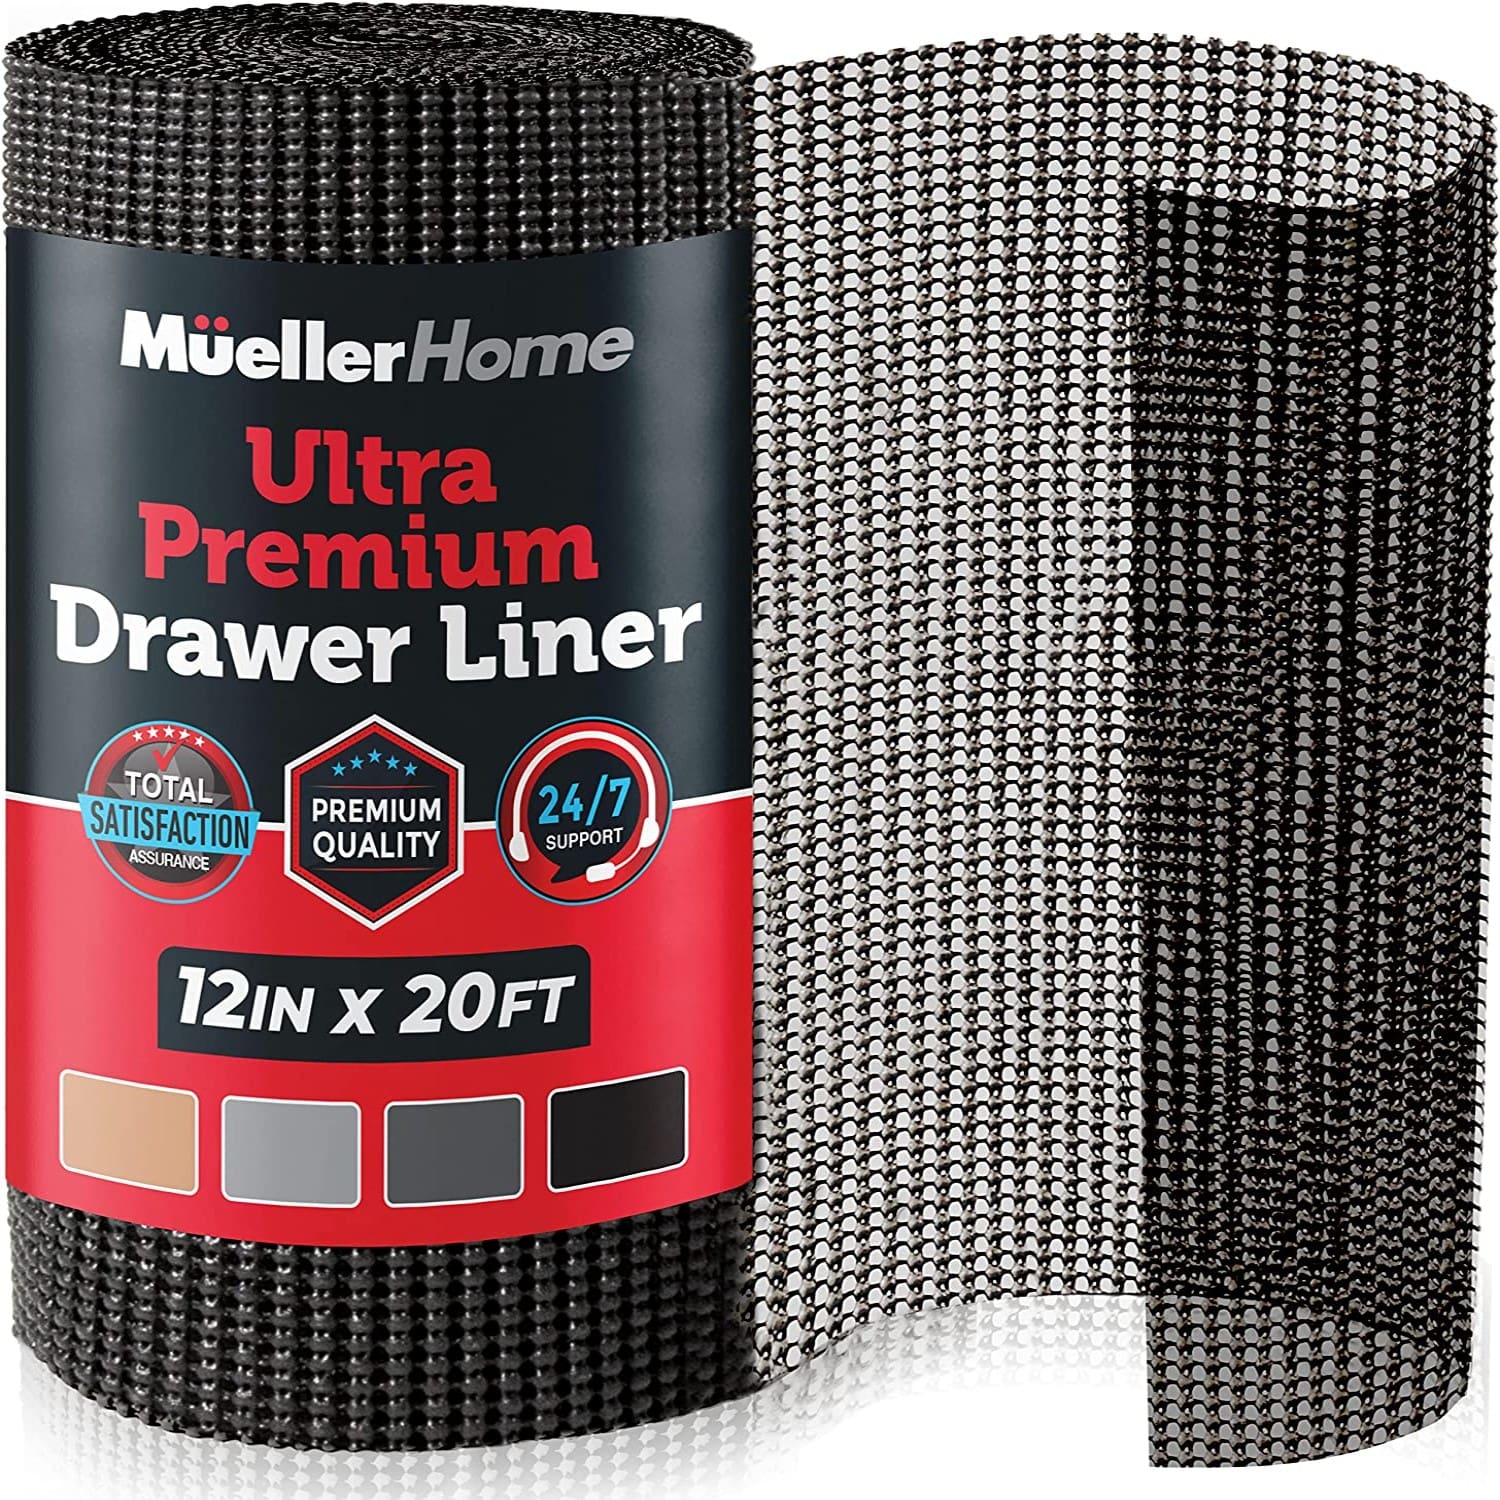 muellerhome_Ultra-Premium Drawer Liner 12in20ft – Black